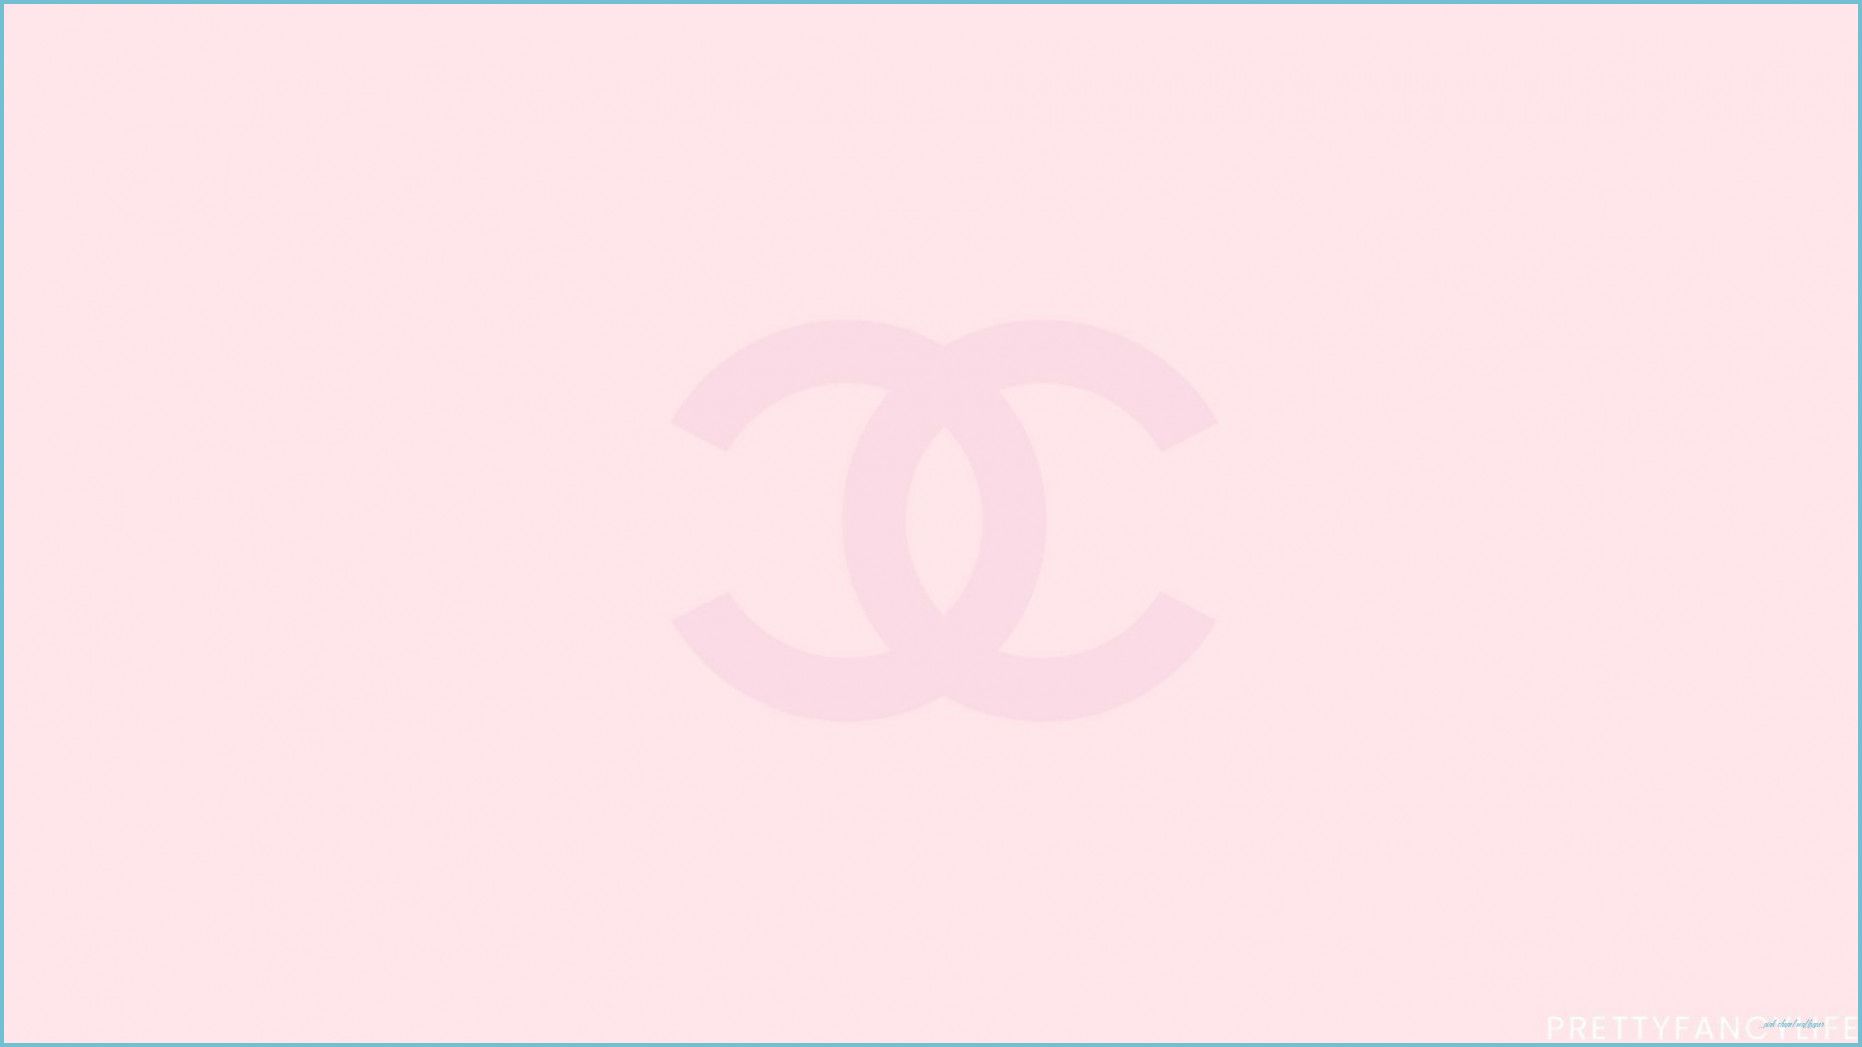 8 Chanel ý tưởng  ảnh tường cho điện thoại hình nền nghệ thuật pop